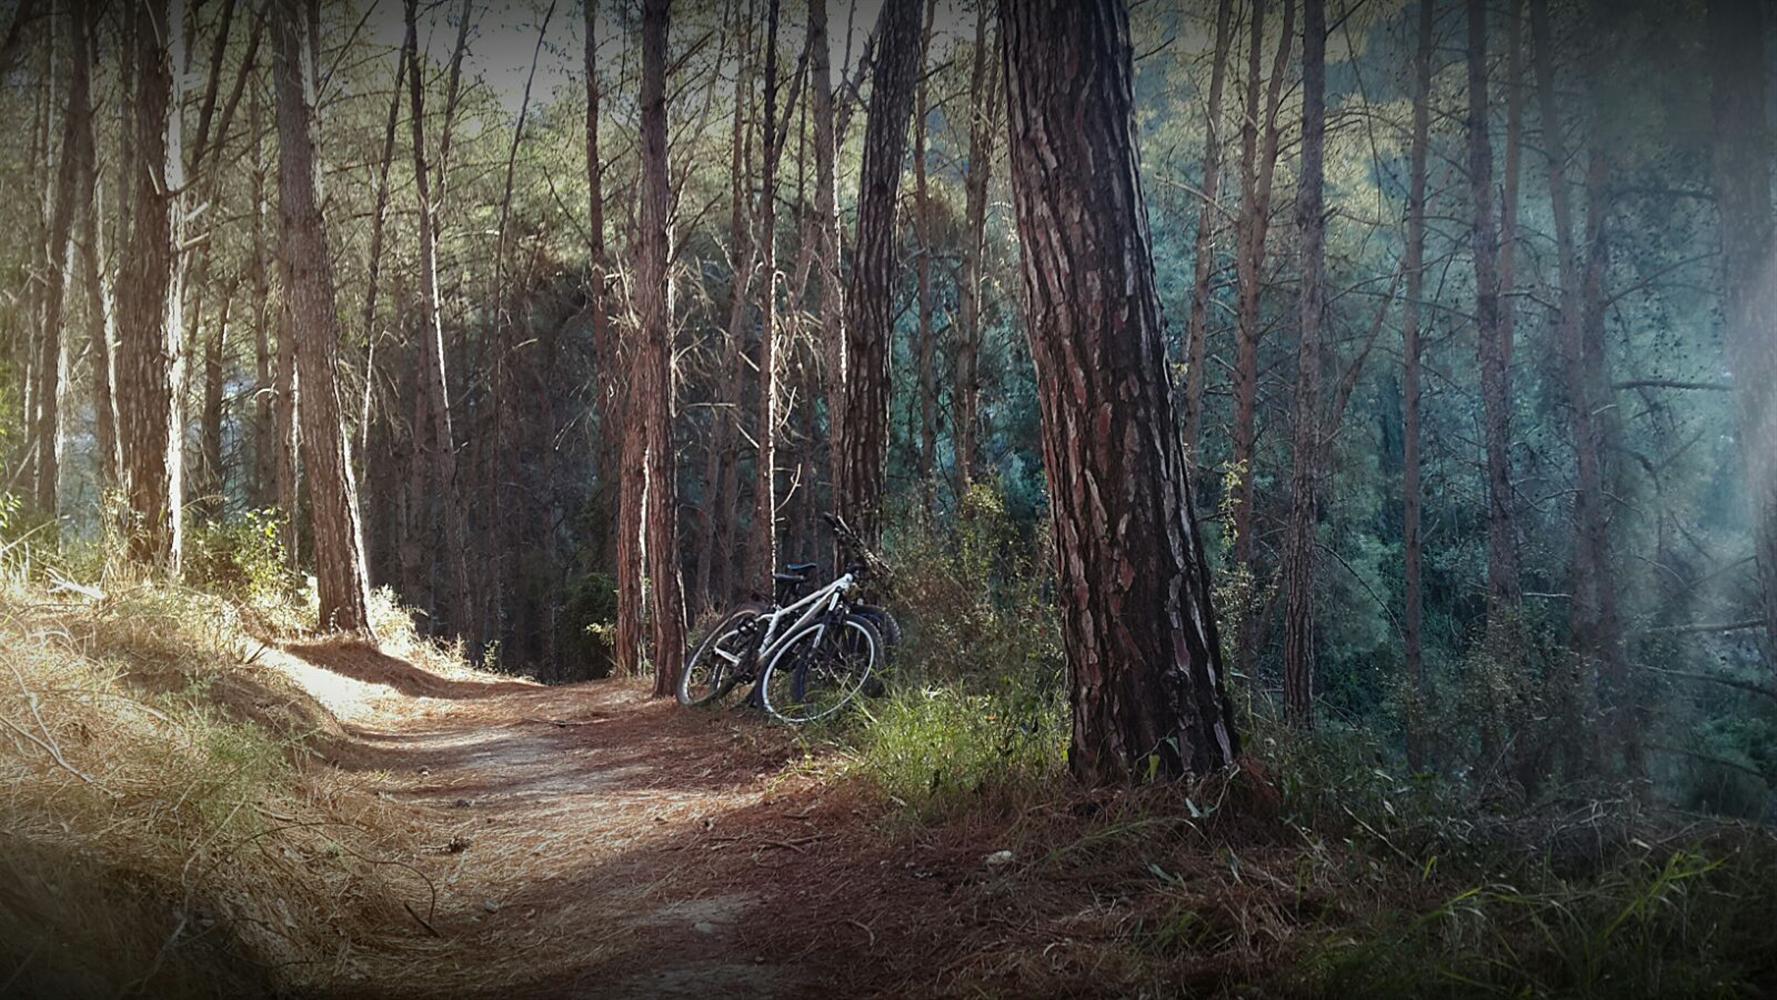 שביל האופניים ביערות רמות מנשה. באדיבות אתר קק"ל